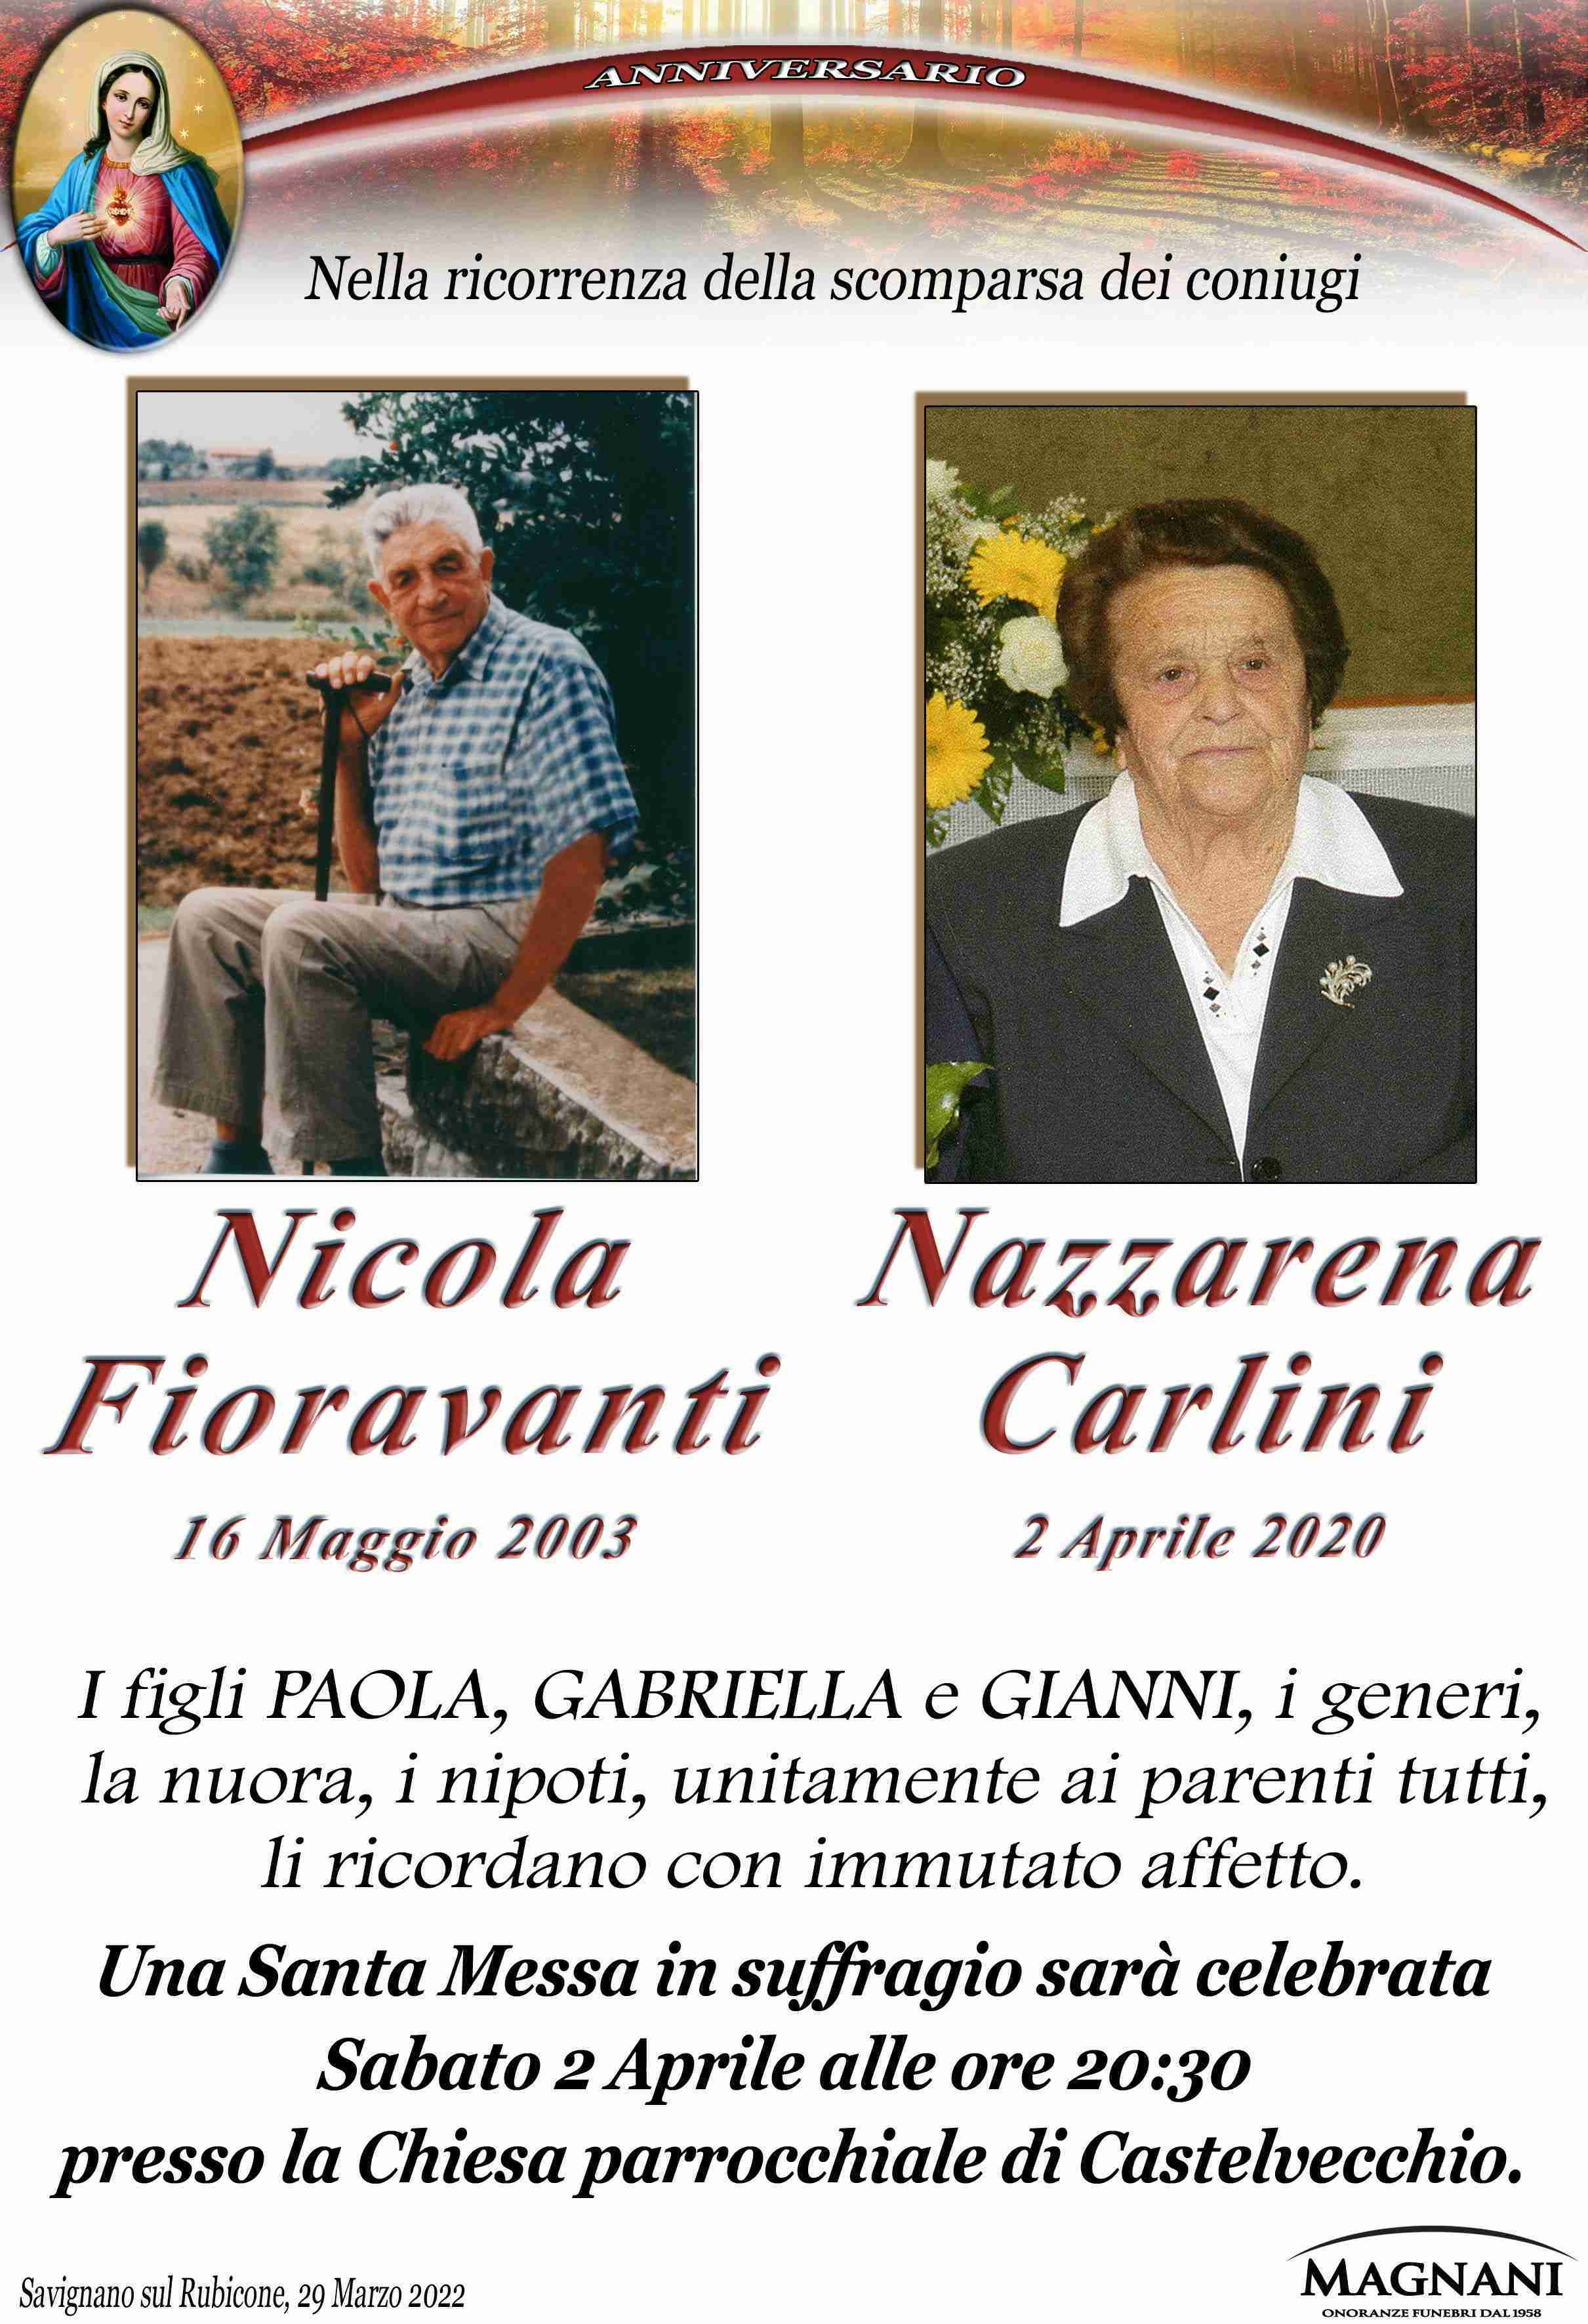 Nicola Fioravanti e Nazzarena Carlini